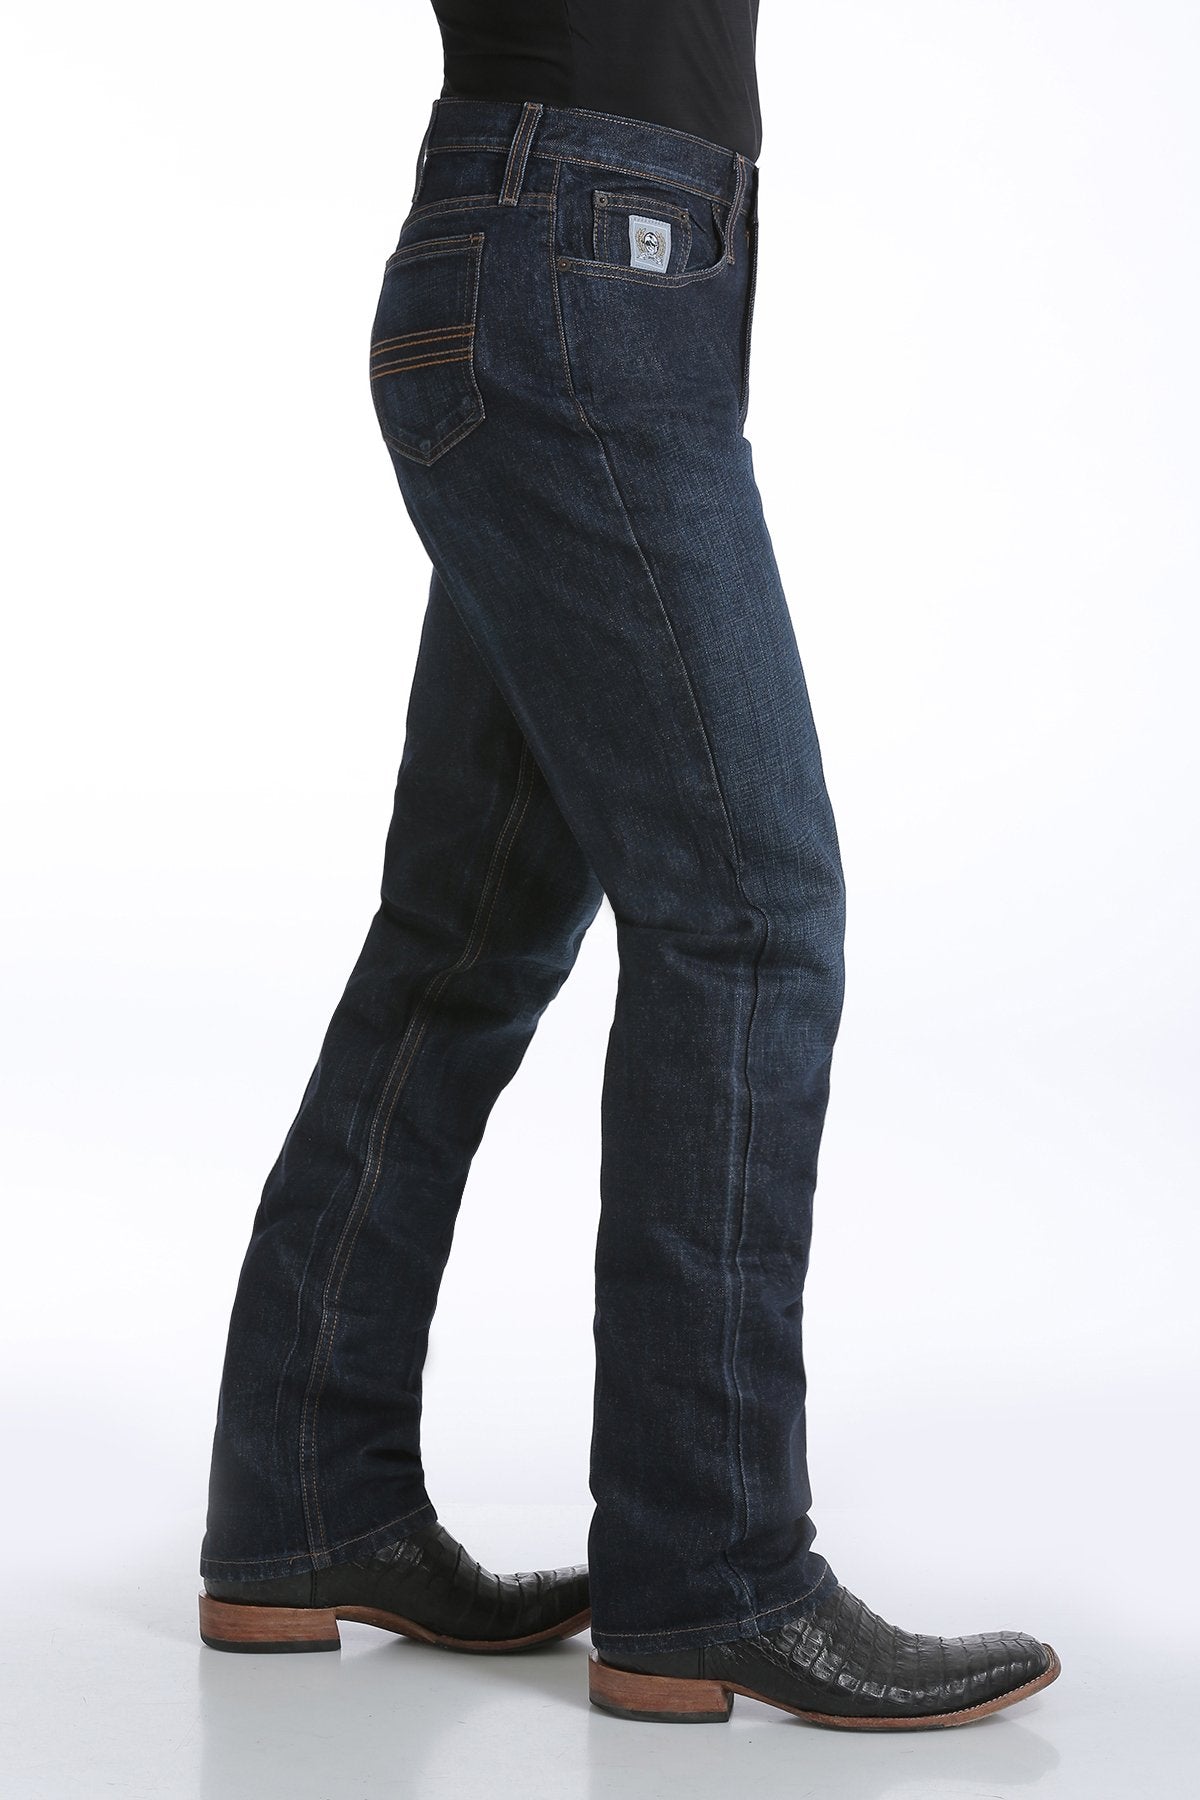 Cinch Men's Silver Label Slim Fit Dark Stonewash Jeans